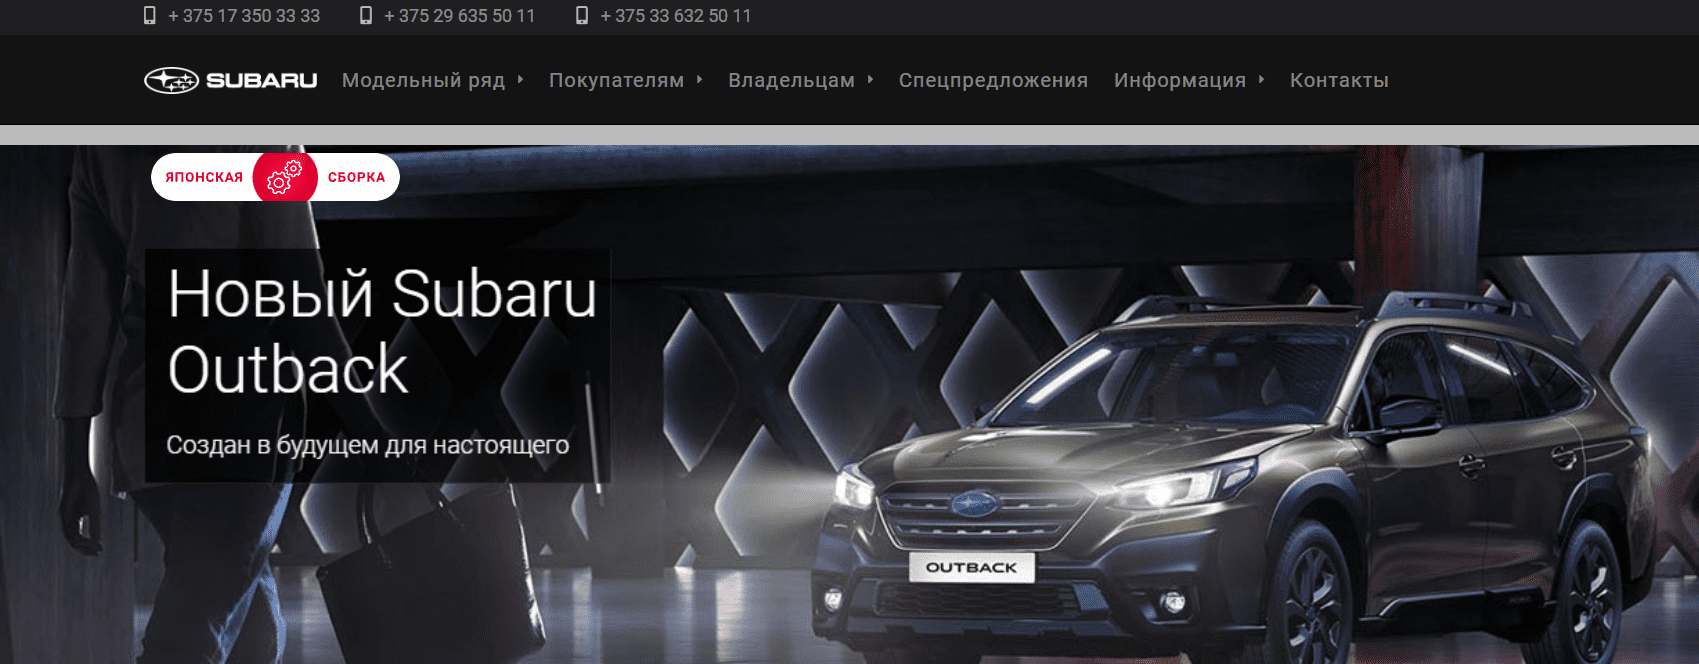 Автомобили Subaru (lankor.by) - официальный сайт